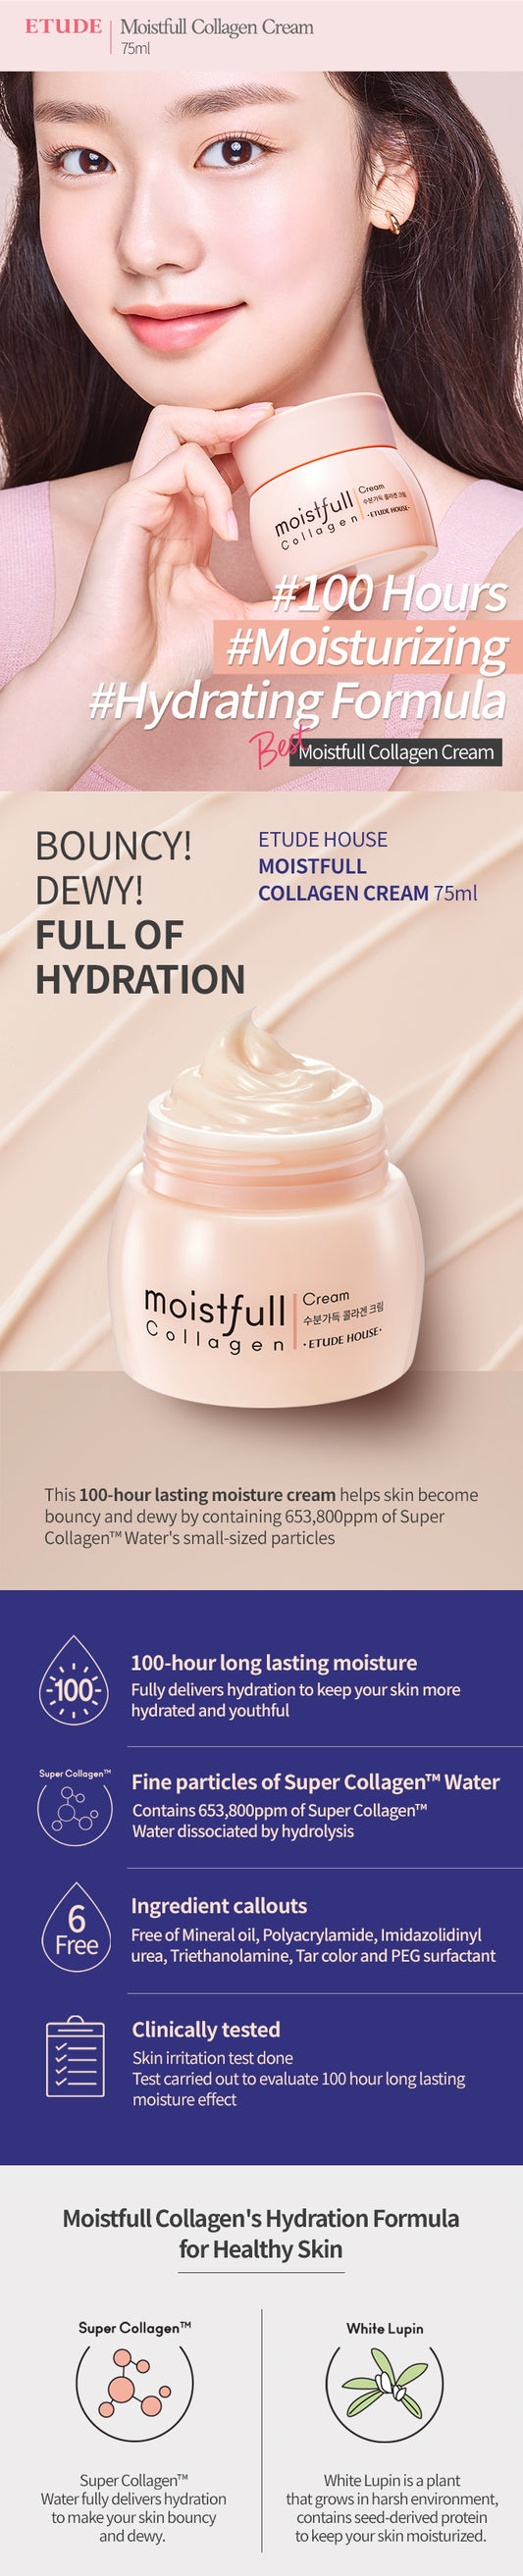 ETUDE HOUSE - Moistfull Collagen Cream 75ml